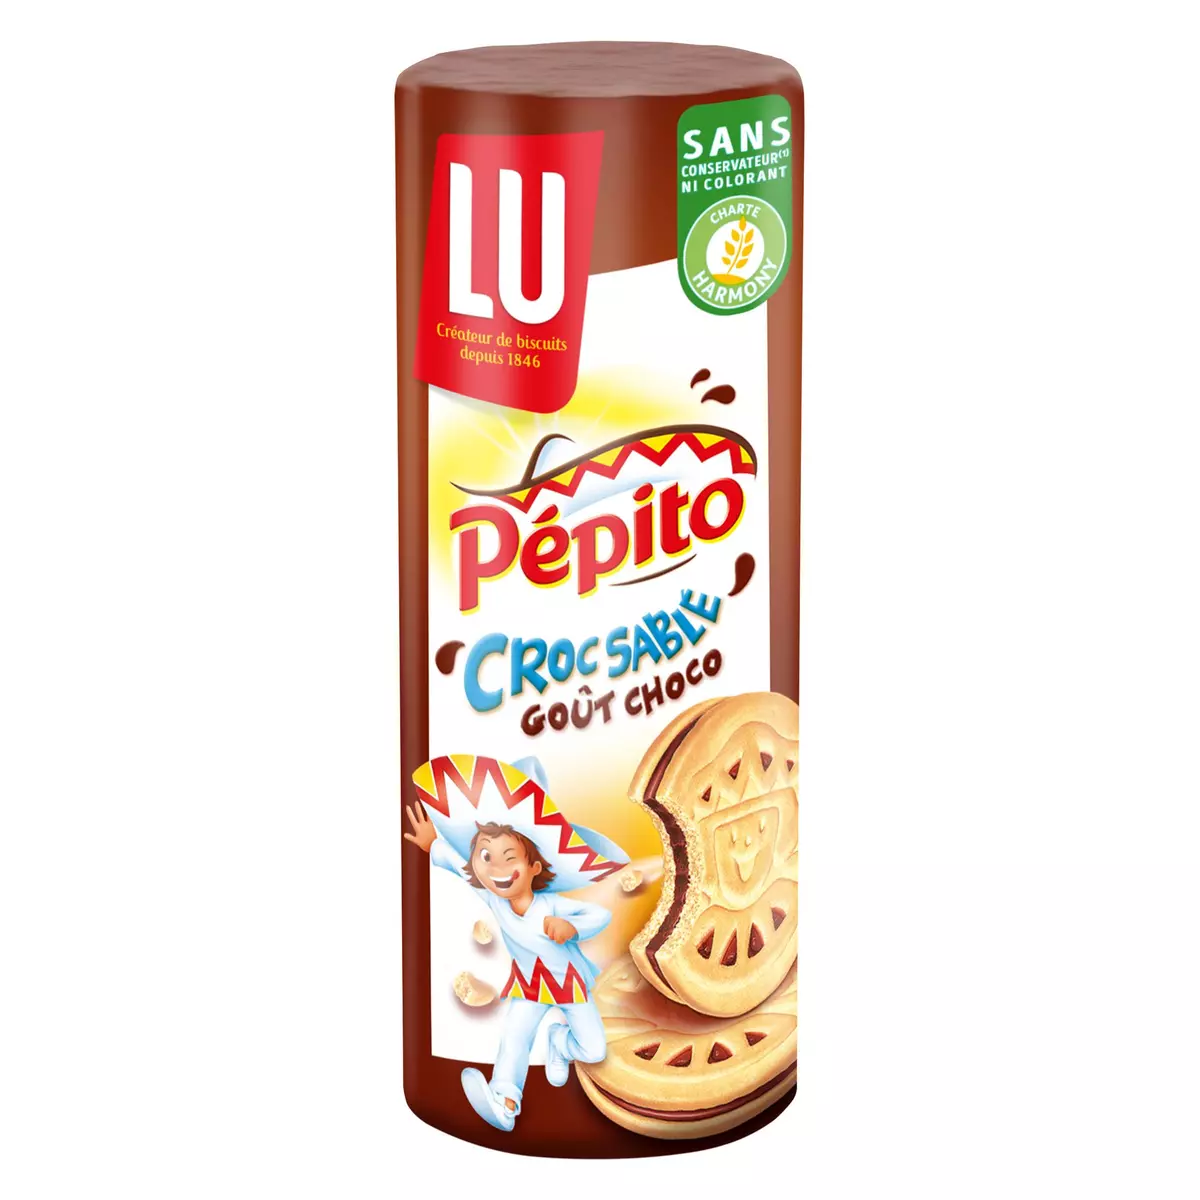 PEPITO Croc sablé, biscuits sablés fourrés au chocolat au lait 14 biscuits 294g